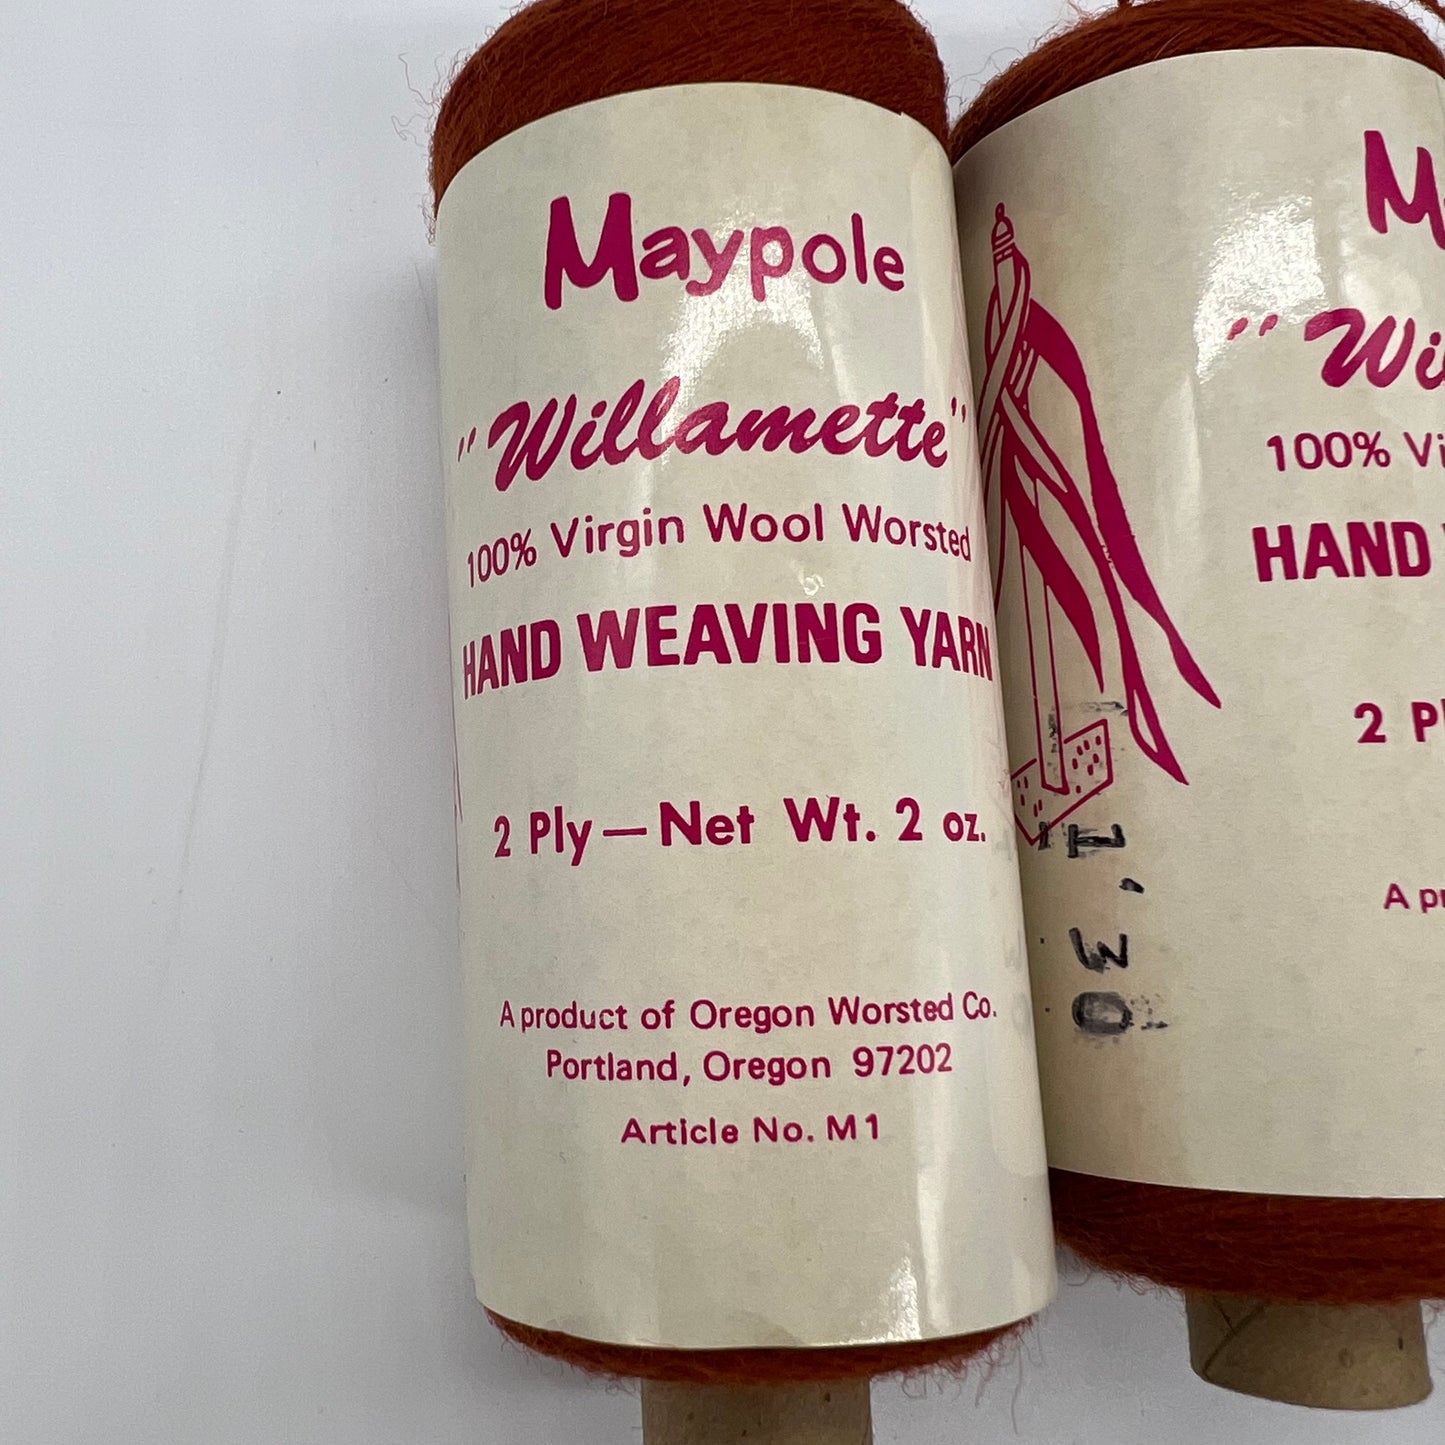 Maypole Willamette Woody Red Yarn